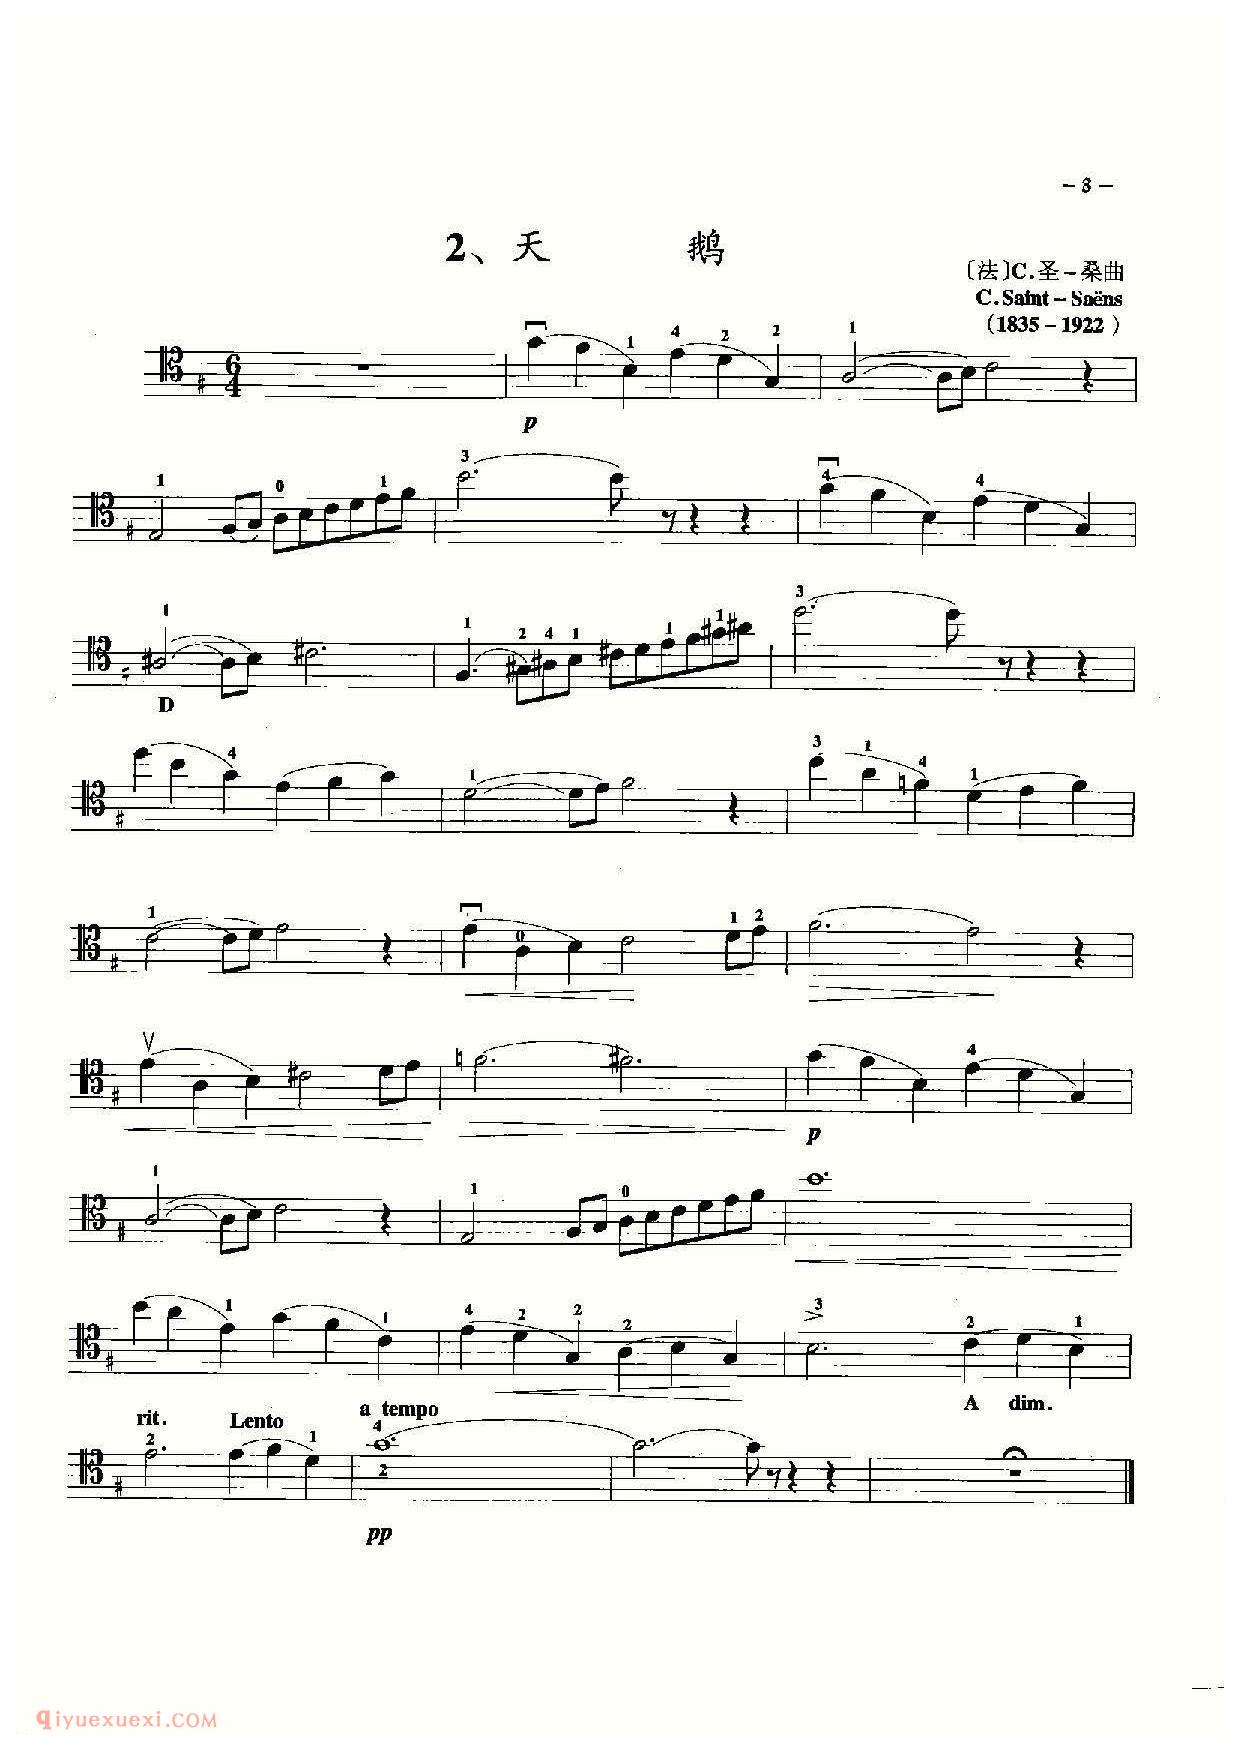 大提琴名曲乐谱《天鹅/圣桑曲》